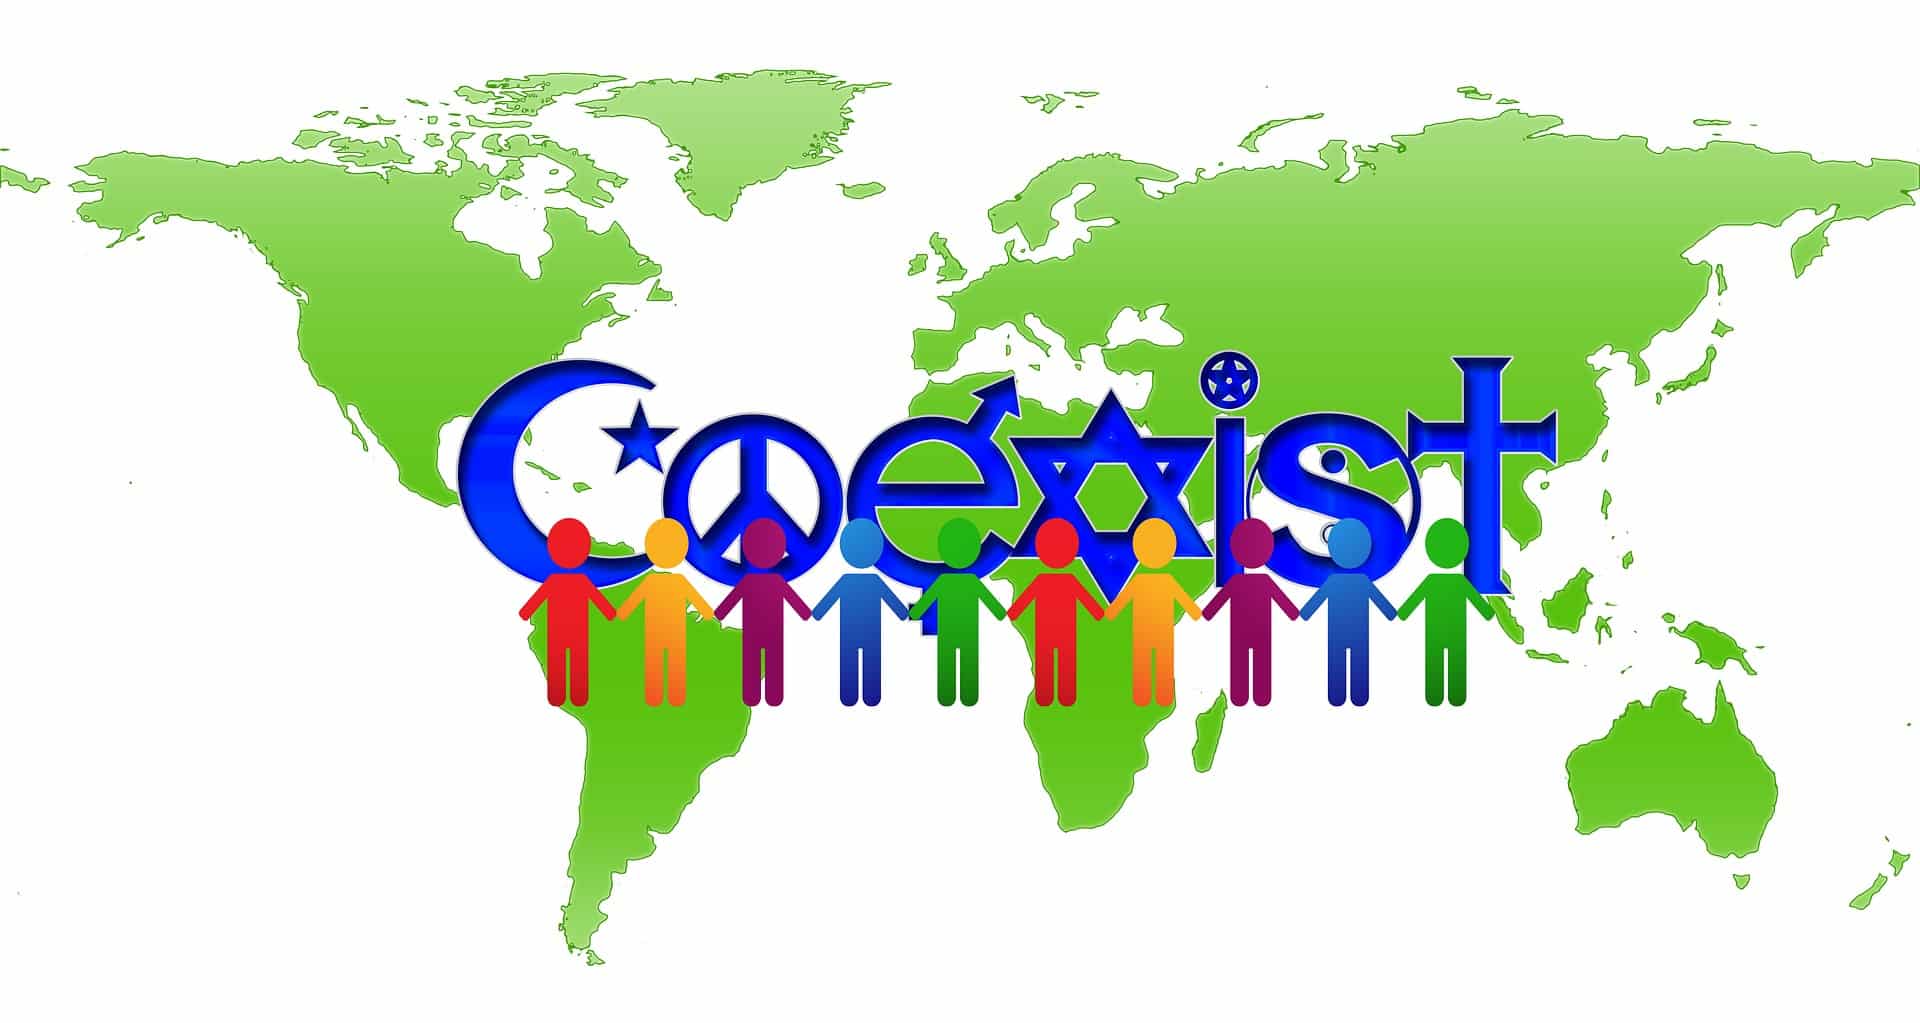 Coexistencia, coexist, religiones